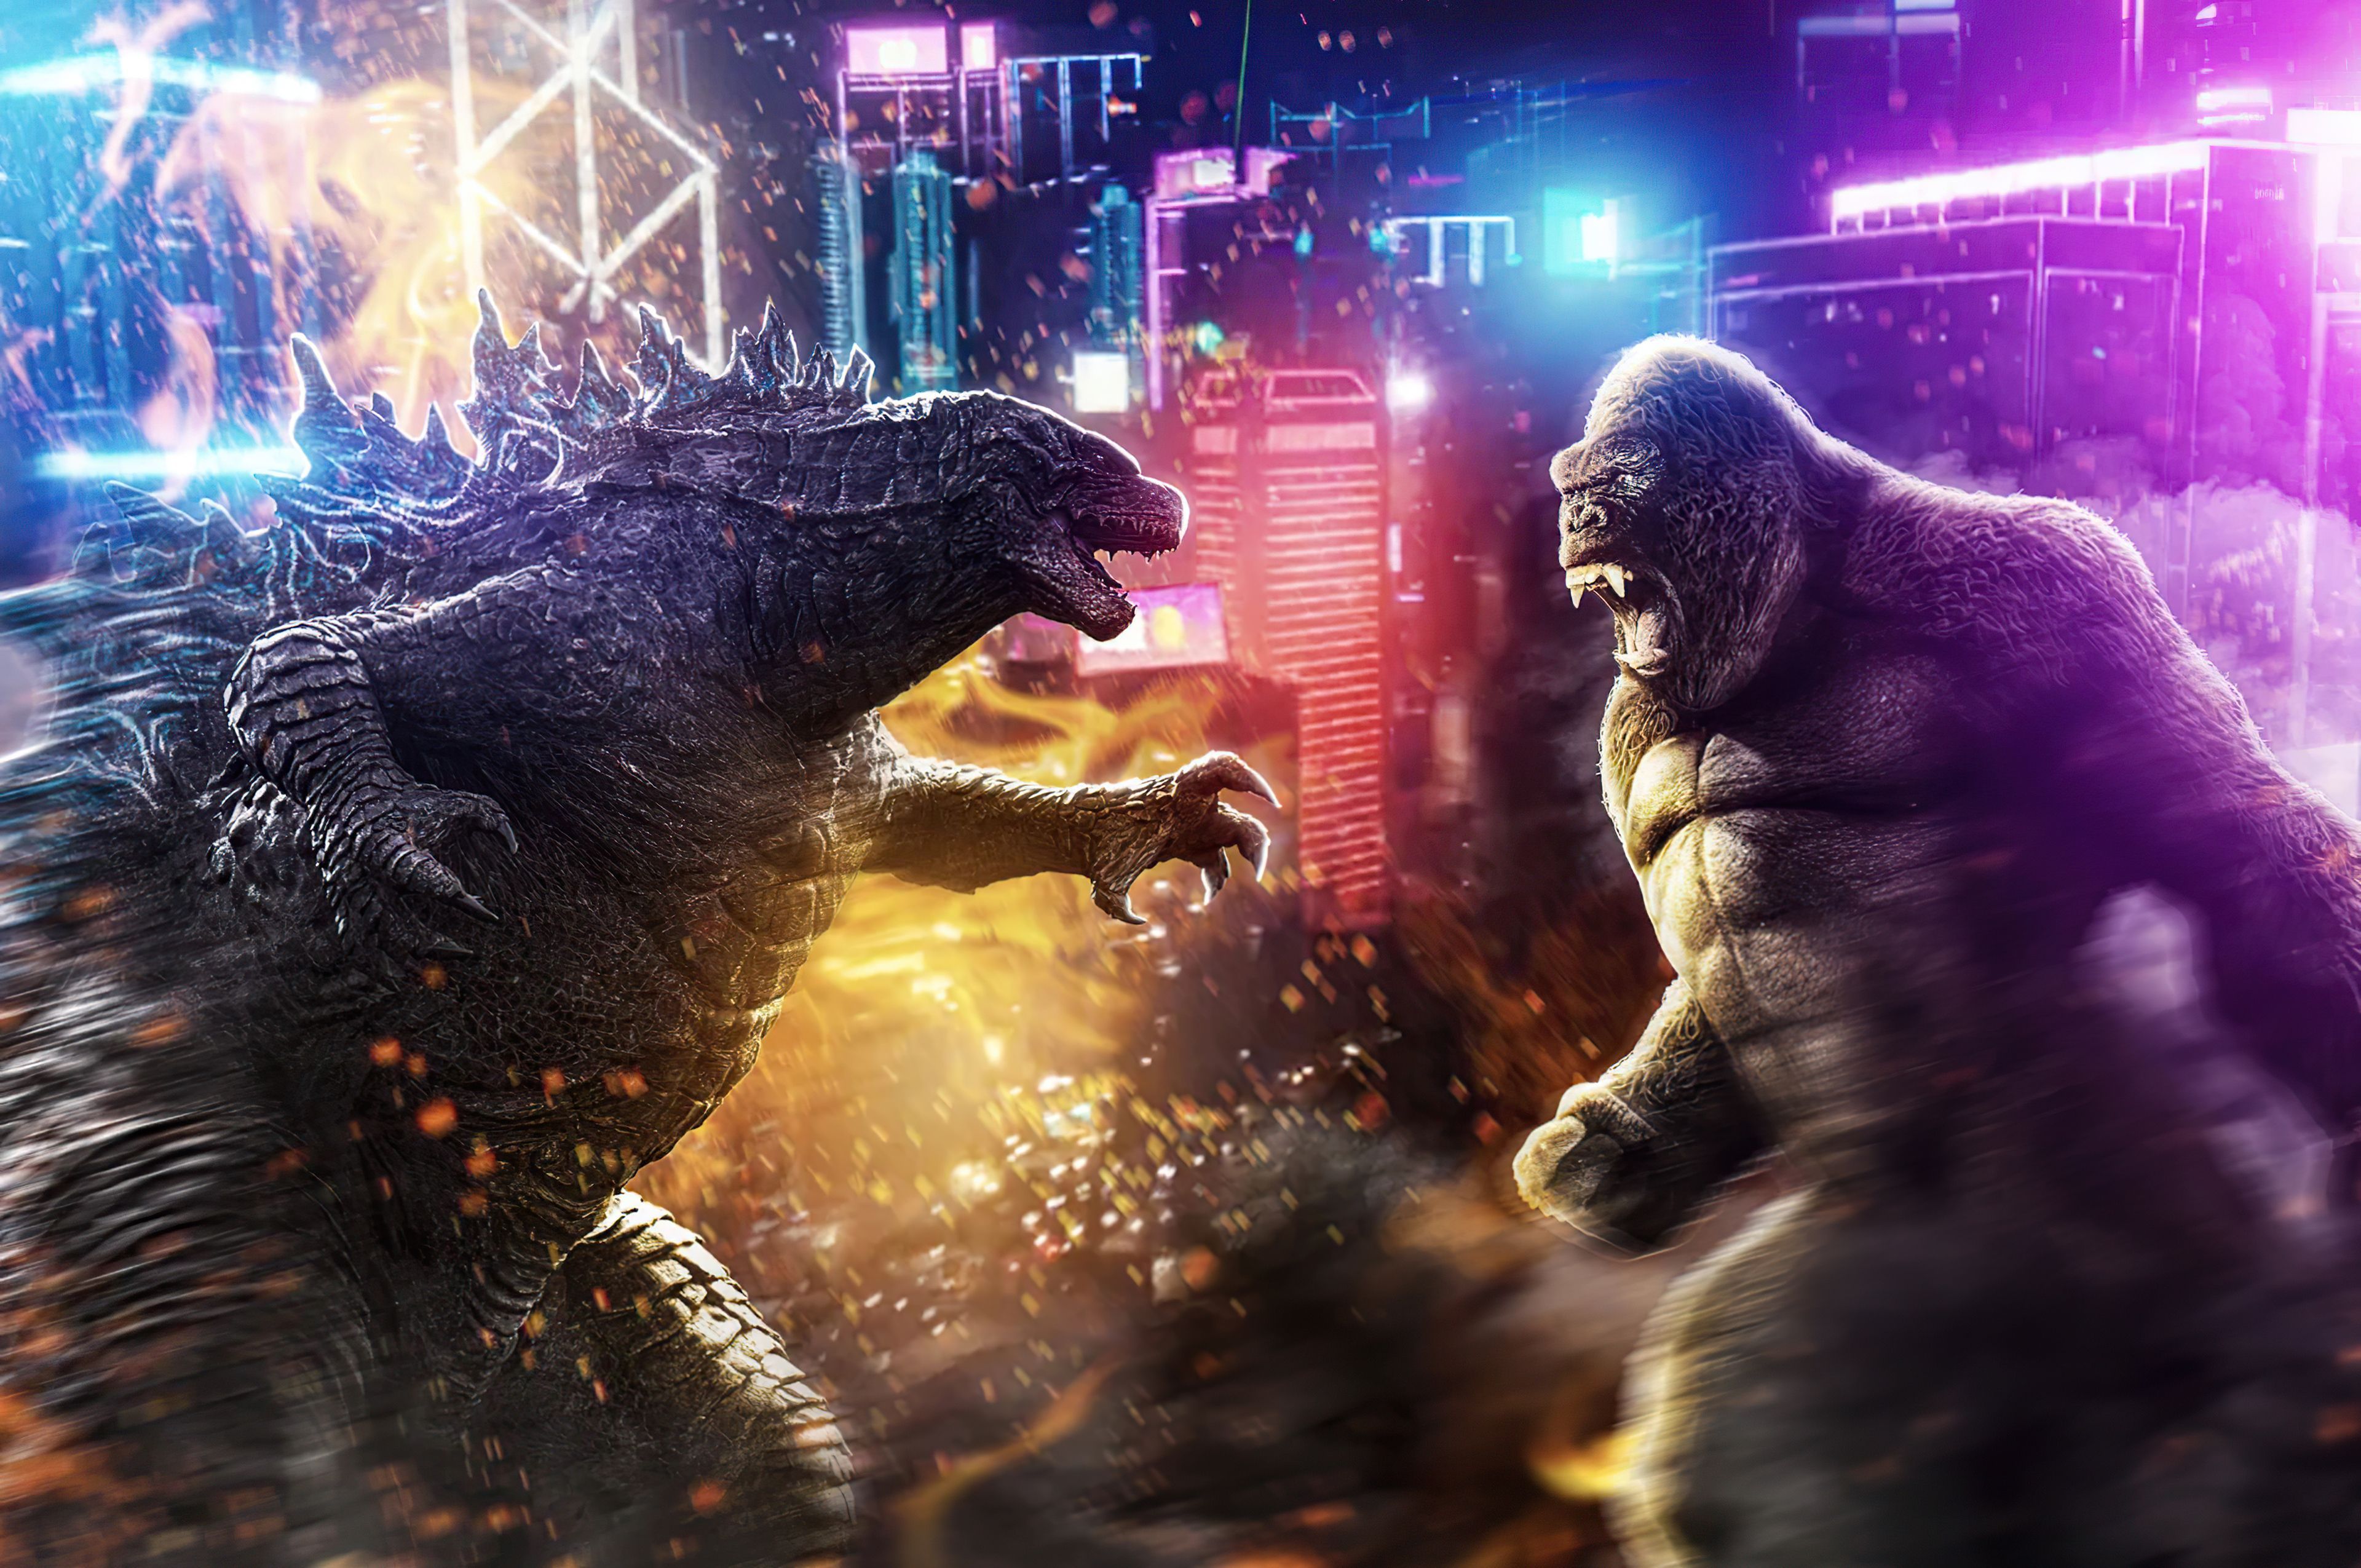 Wallpaper Godzilla Vs Kong hd, picture, image